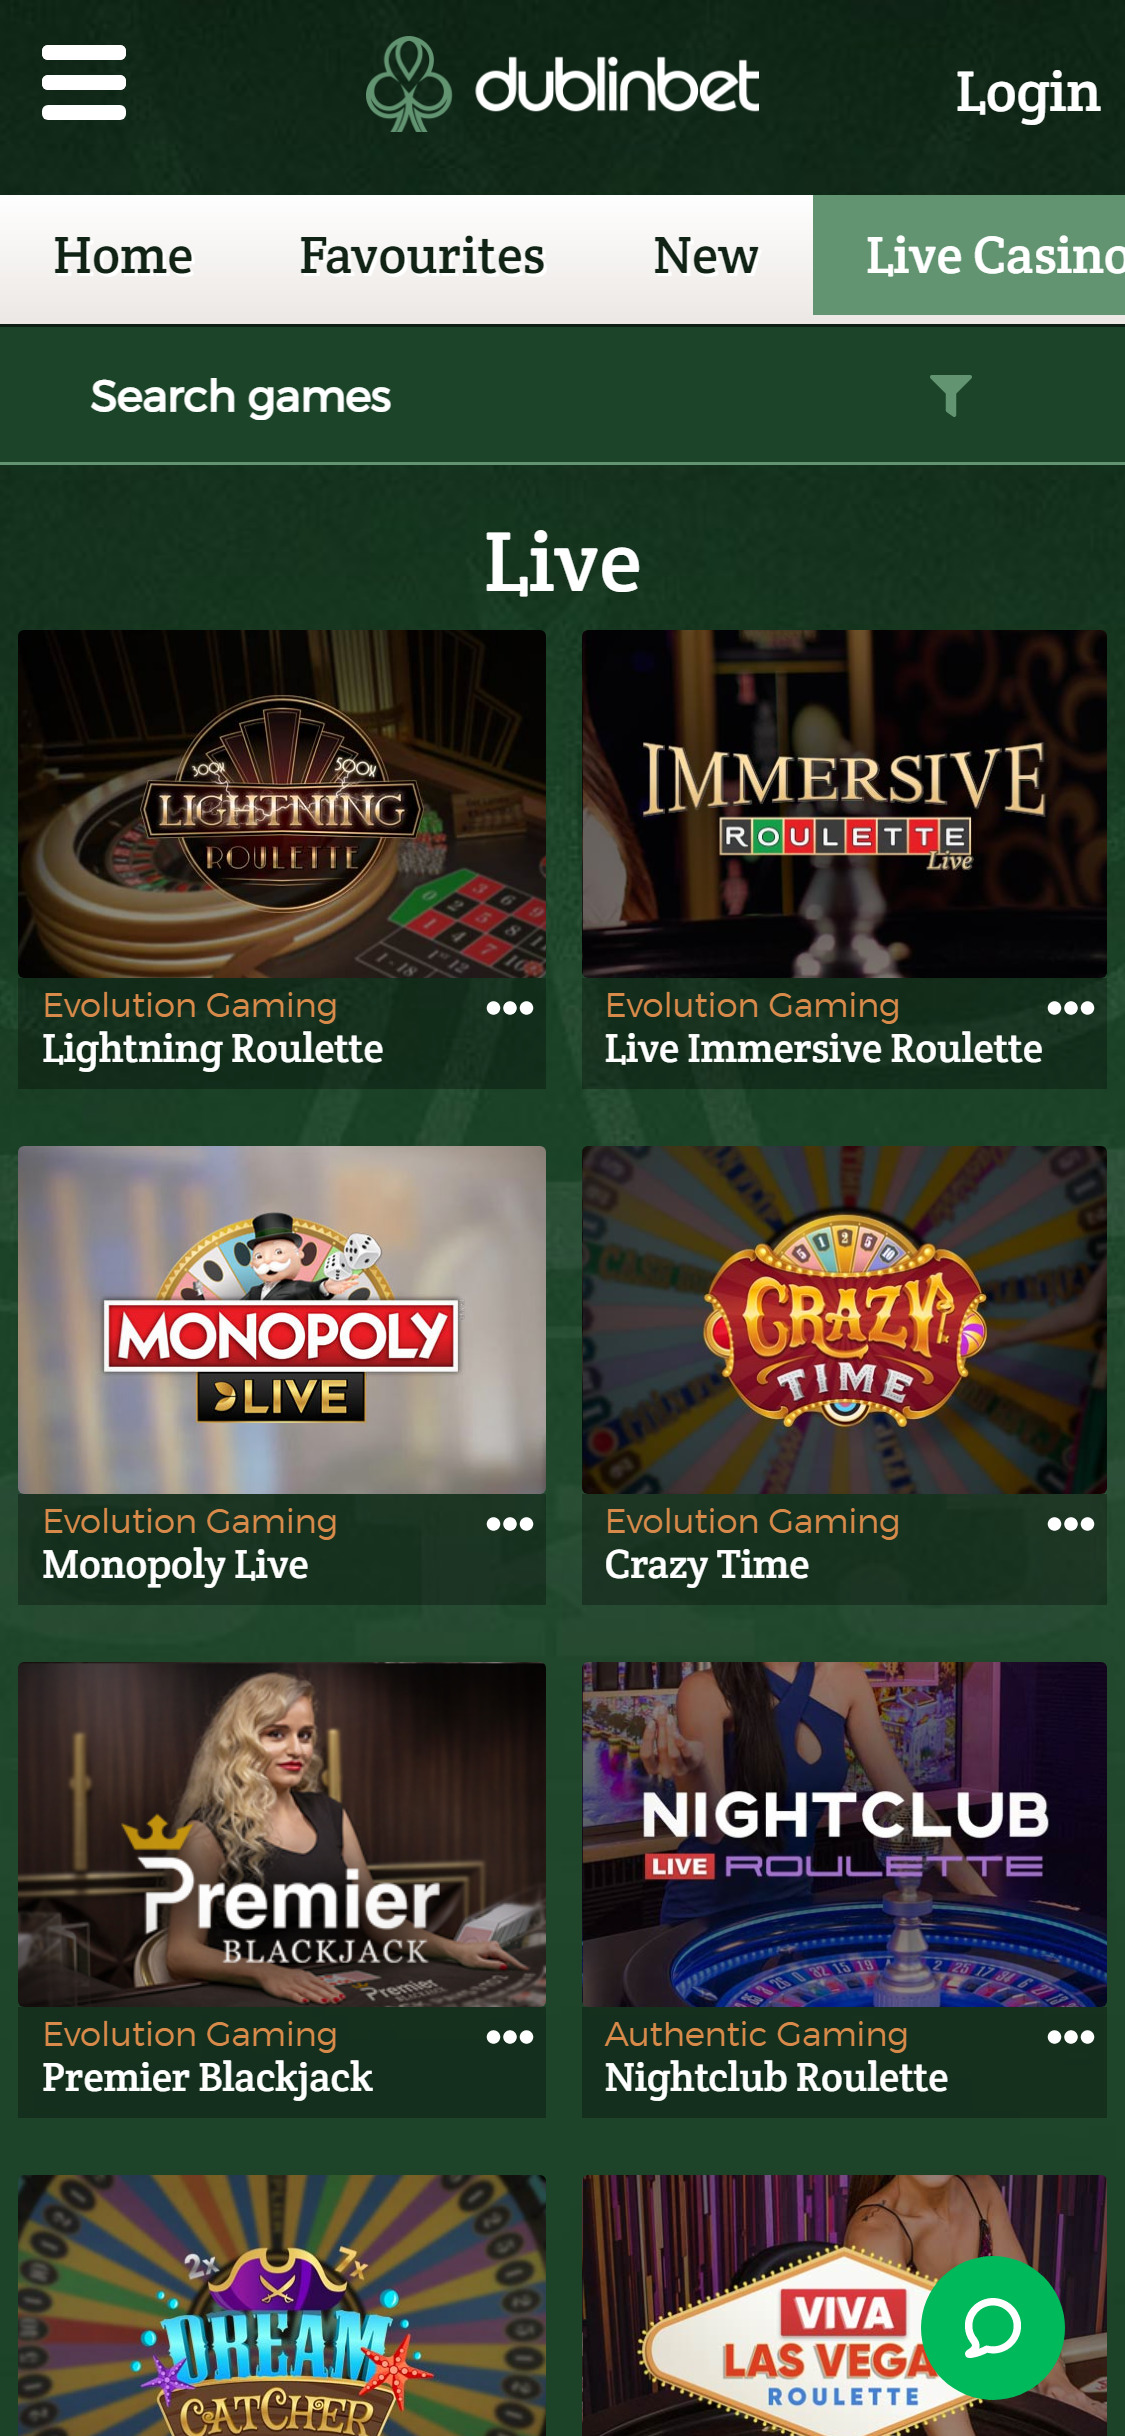 Dublinbet Casino Mobile Live Dealer Games Review